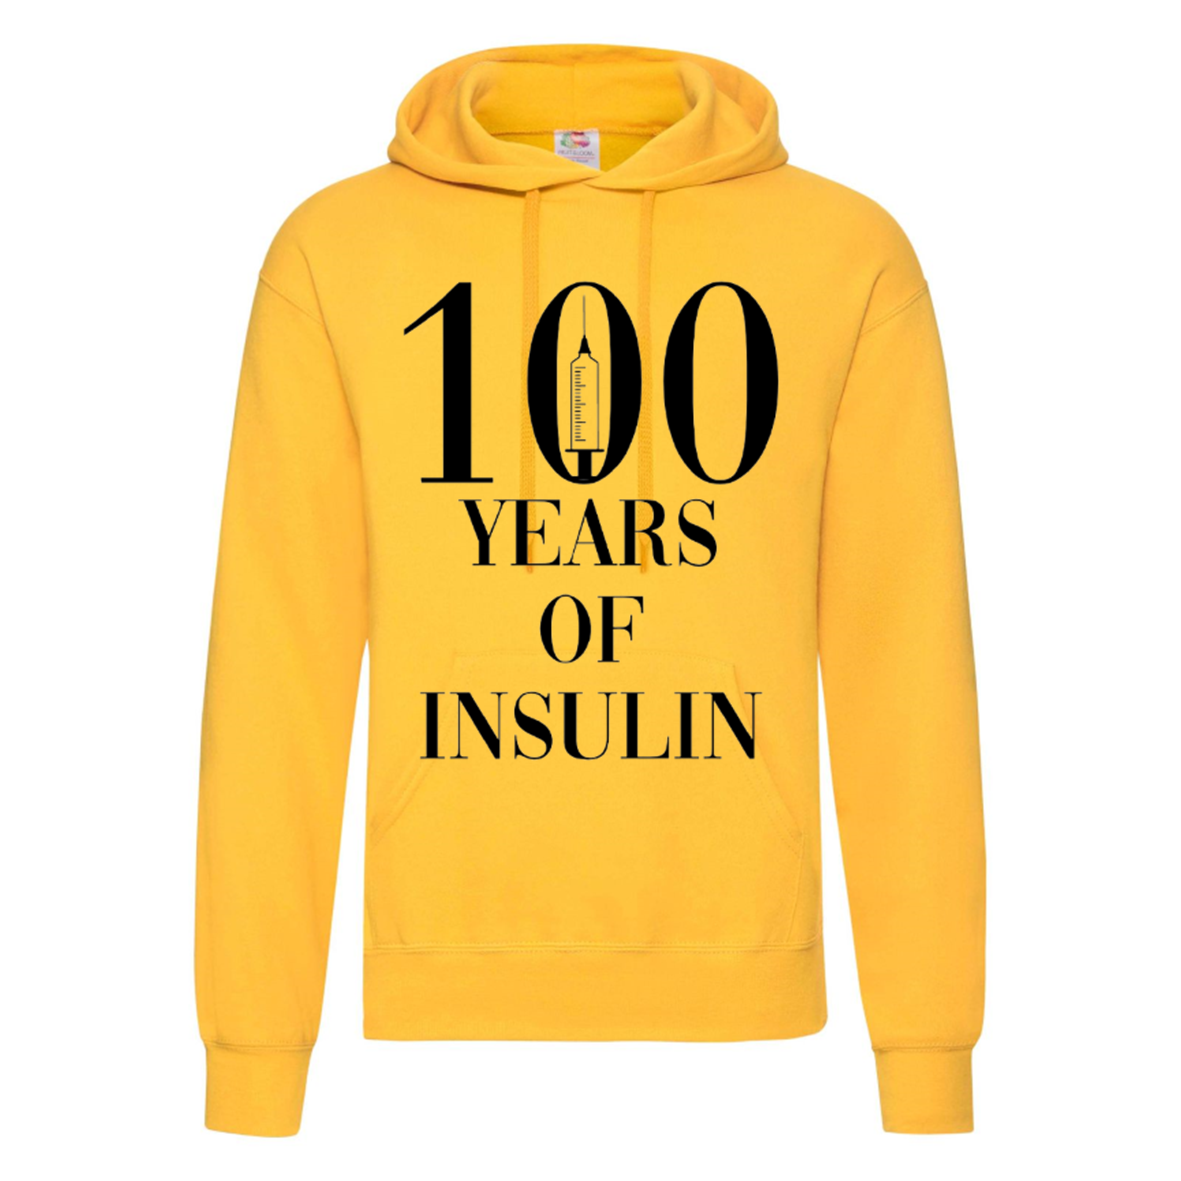 100 Years Of Insulin Hoodie